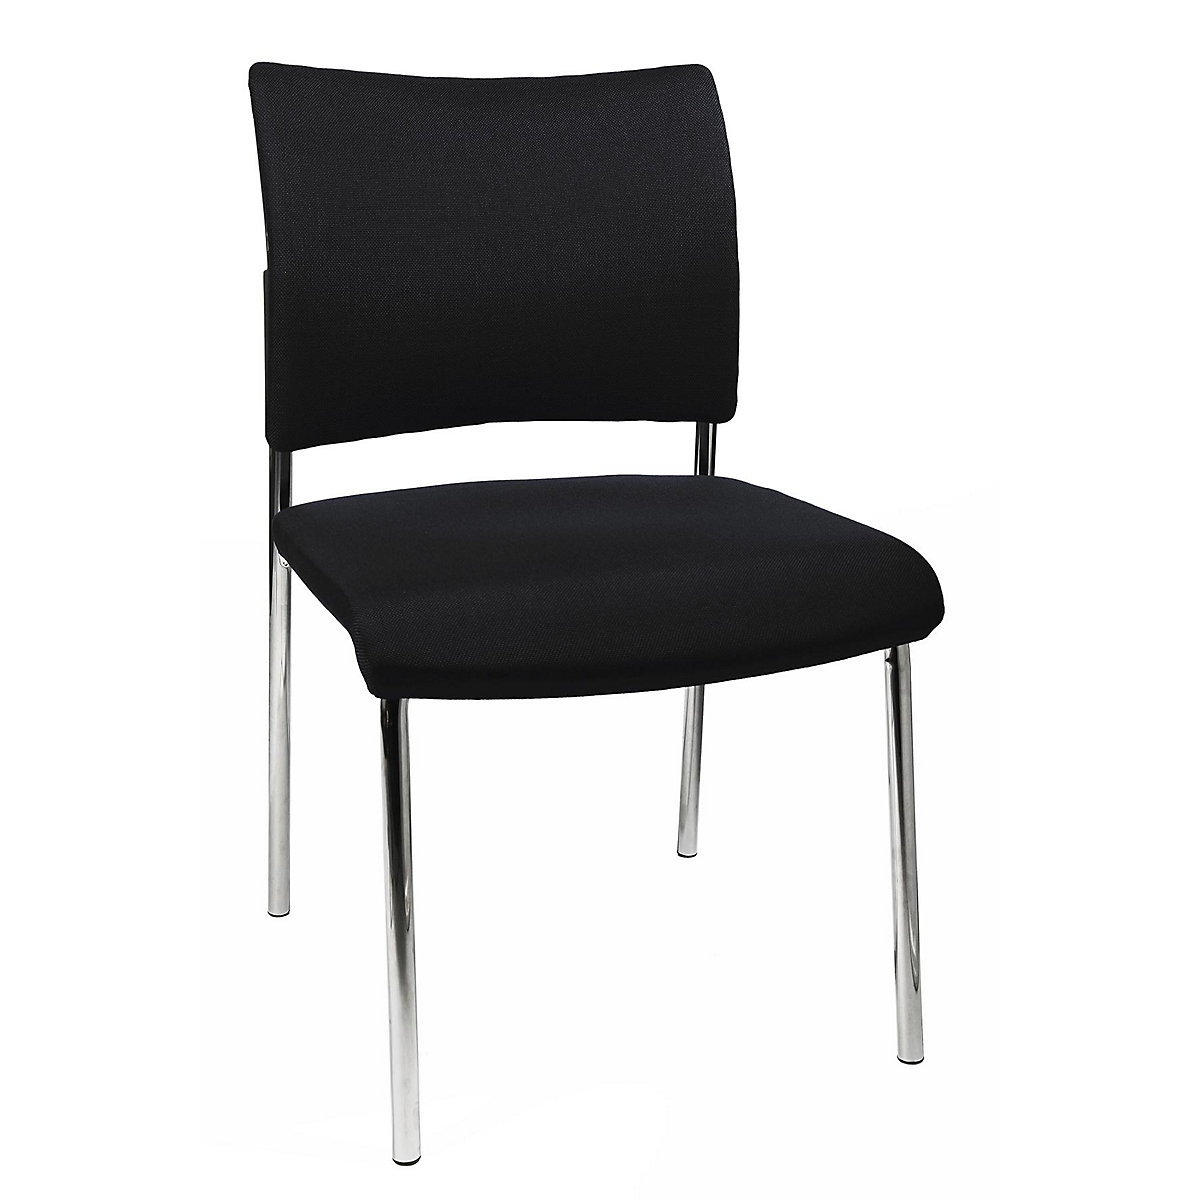 Bezoekersstoel, stapelbaar – Topstar, met 4 poten, rugleuning met textielbekleding, VE = 2 stuks, zwart-7